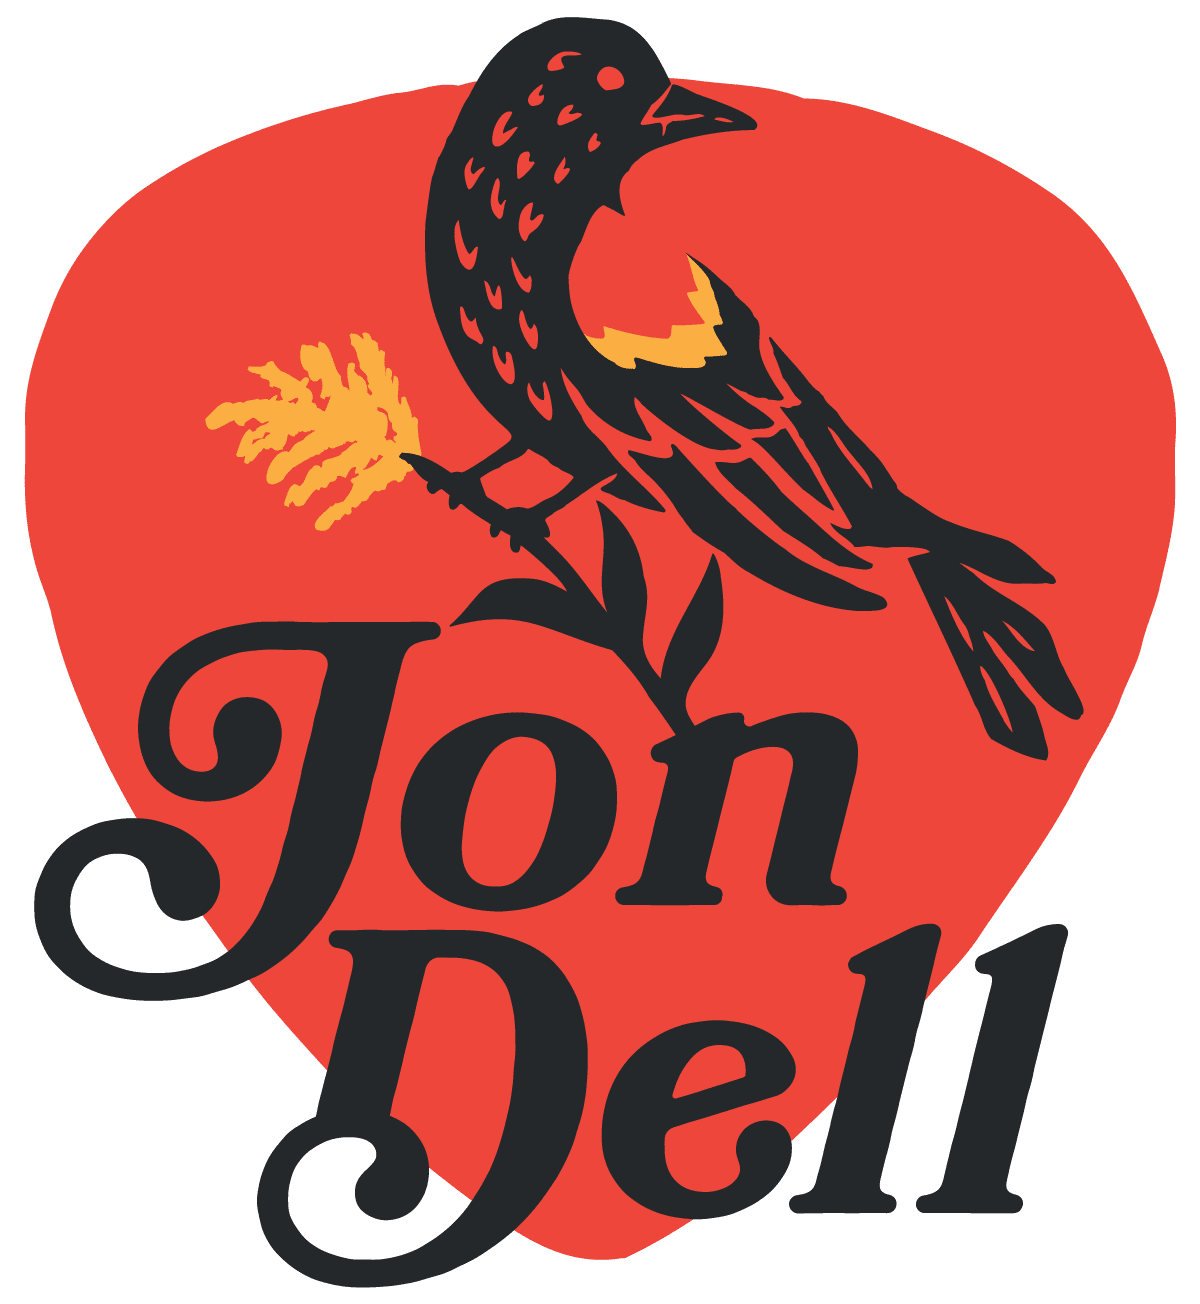 Jon Dell